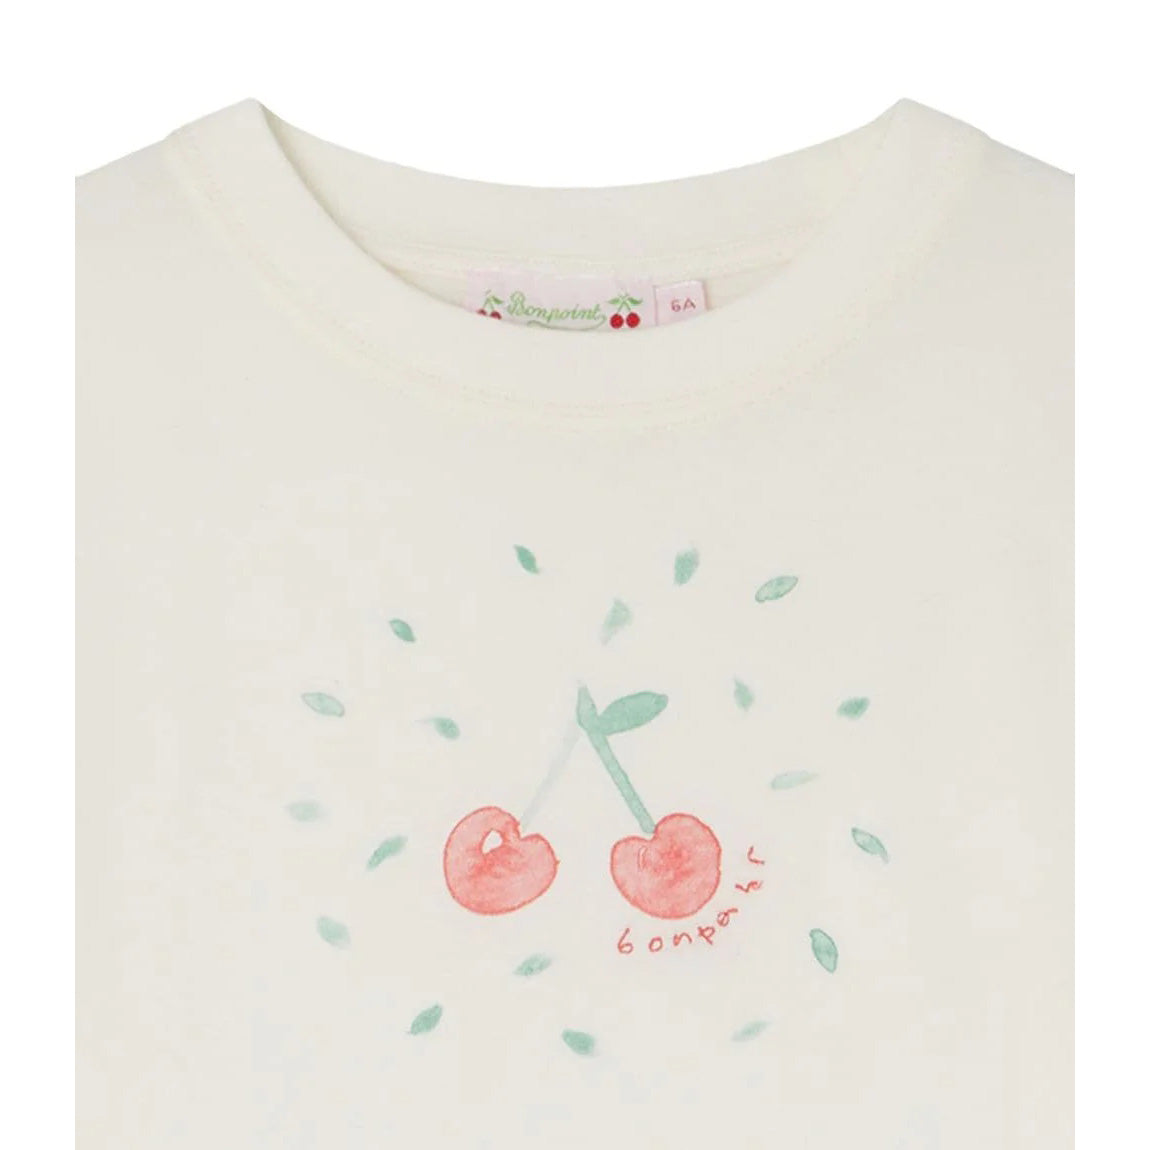 Girls White Cherry Cotton T-Shirt